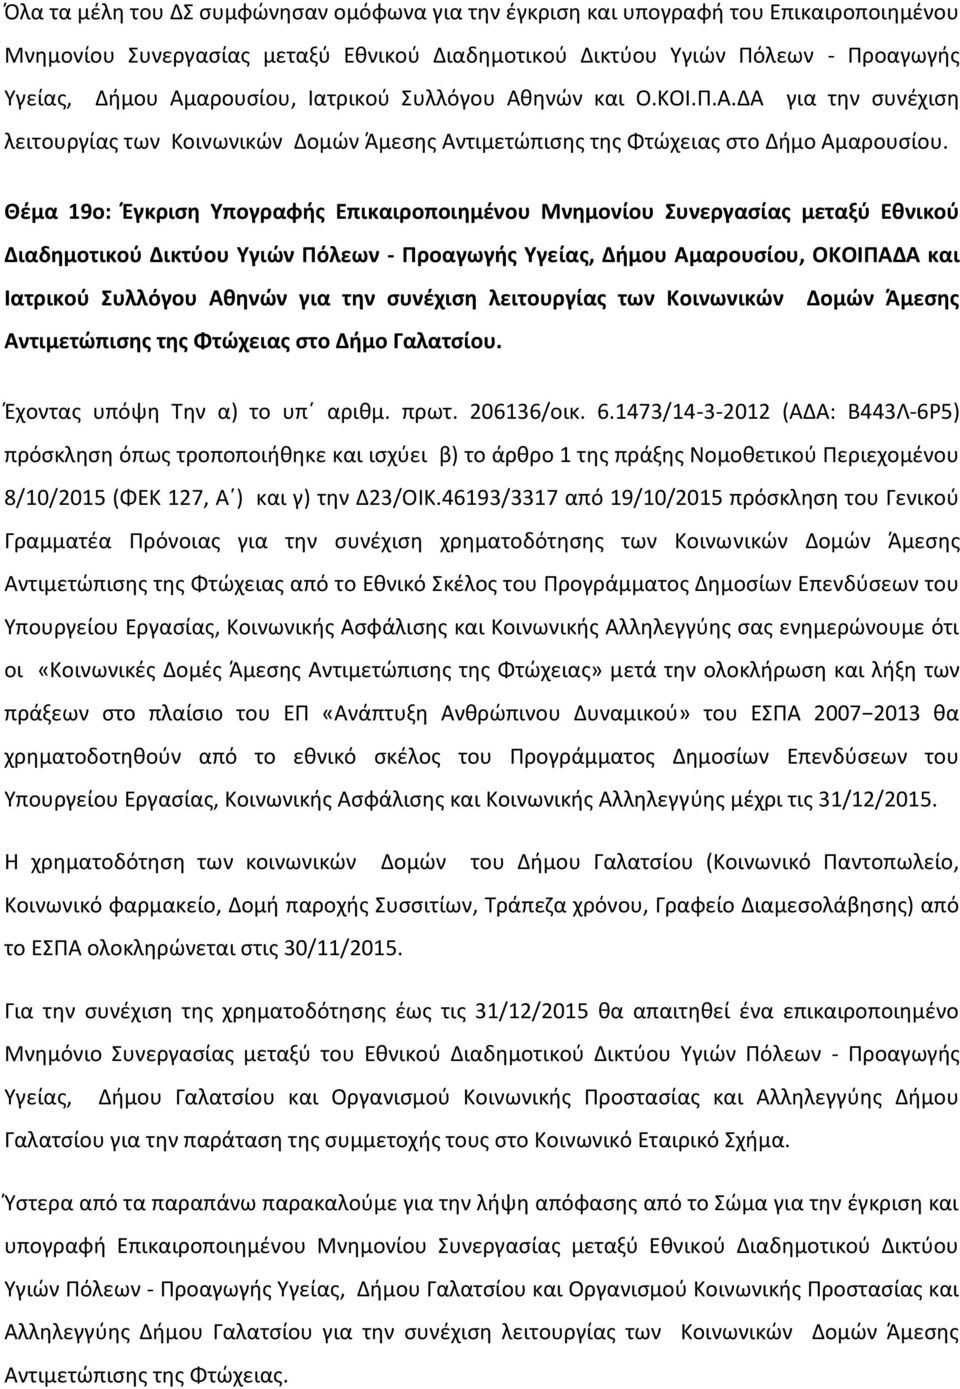 Θέμα 19ο: Έγκριση Υπογραφής Επικαιροποιημένου Μνημονίου Συνεργασίας μεταξύ Εθνικού Διαδημοτικού Δικτύου Υγιών Πόλεων - Προαγωγής Υγείας, Δήμου Αμαρουσίου, ΟΚΟΙΠΑΔΑ και Ιατρικού Συλλόγου Αθηνών για